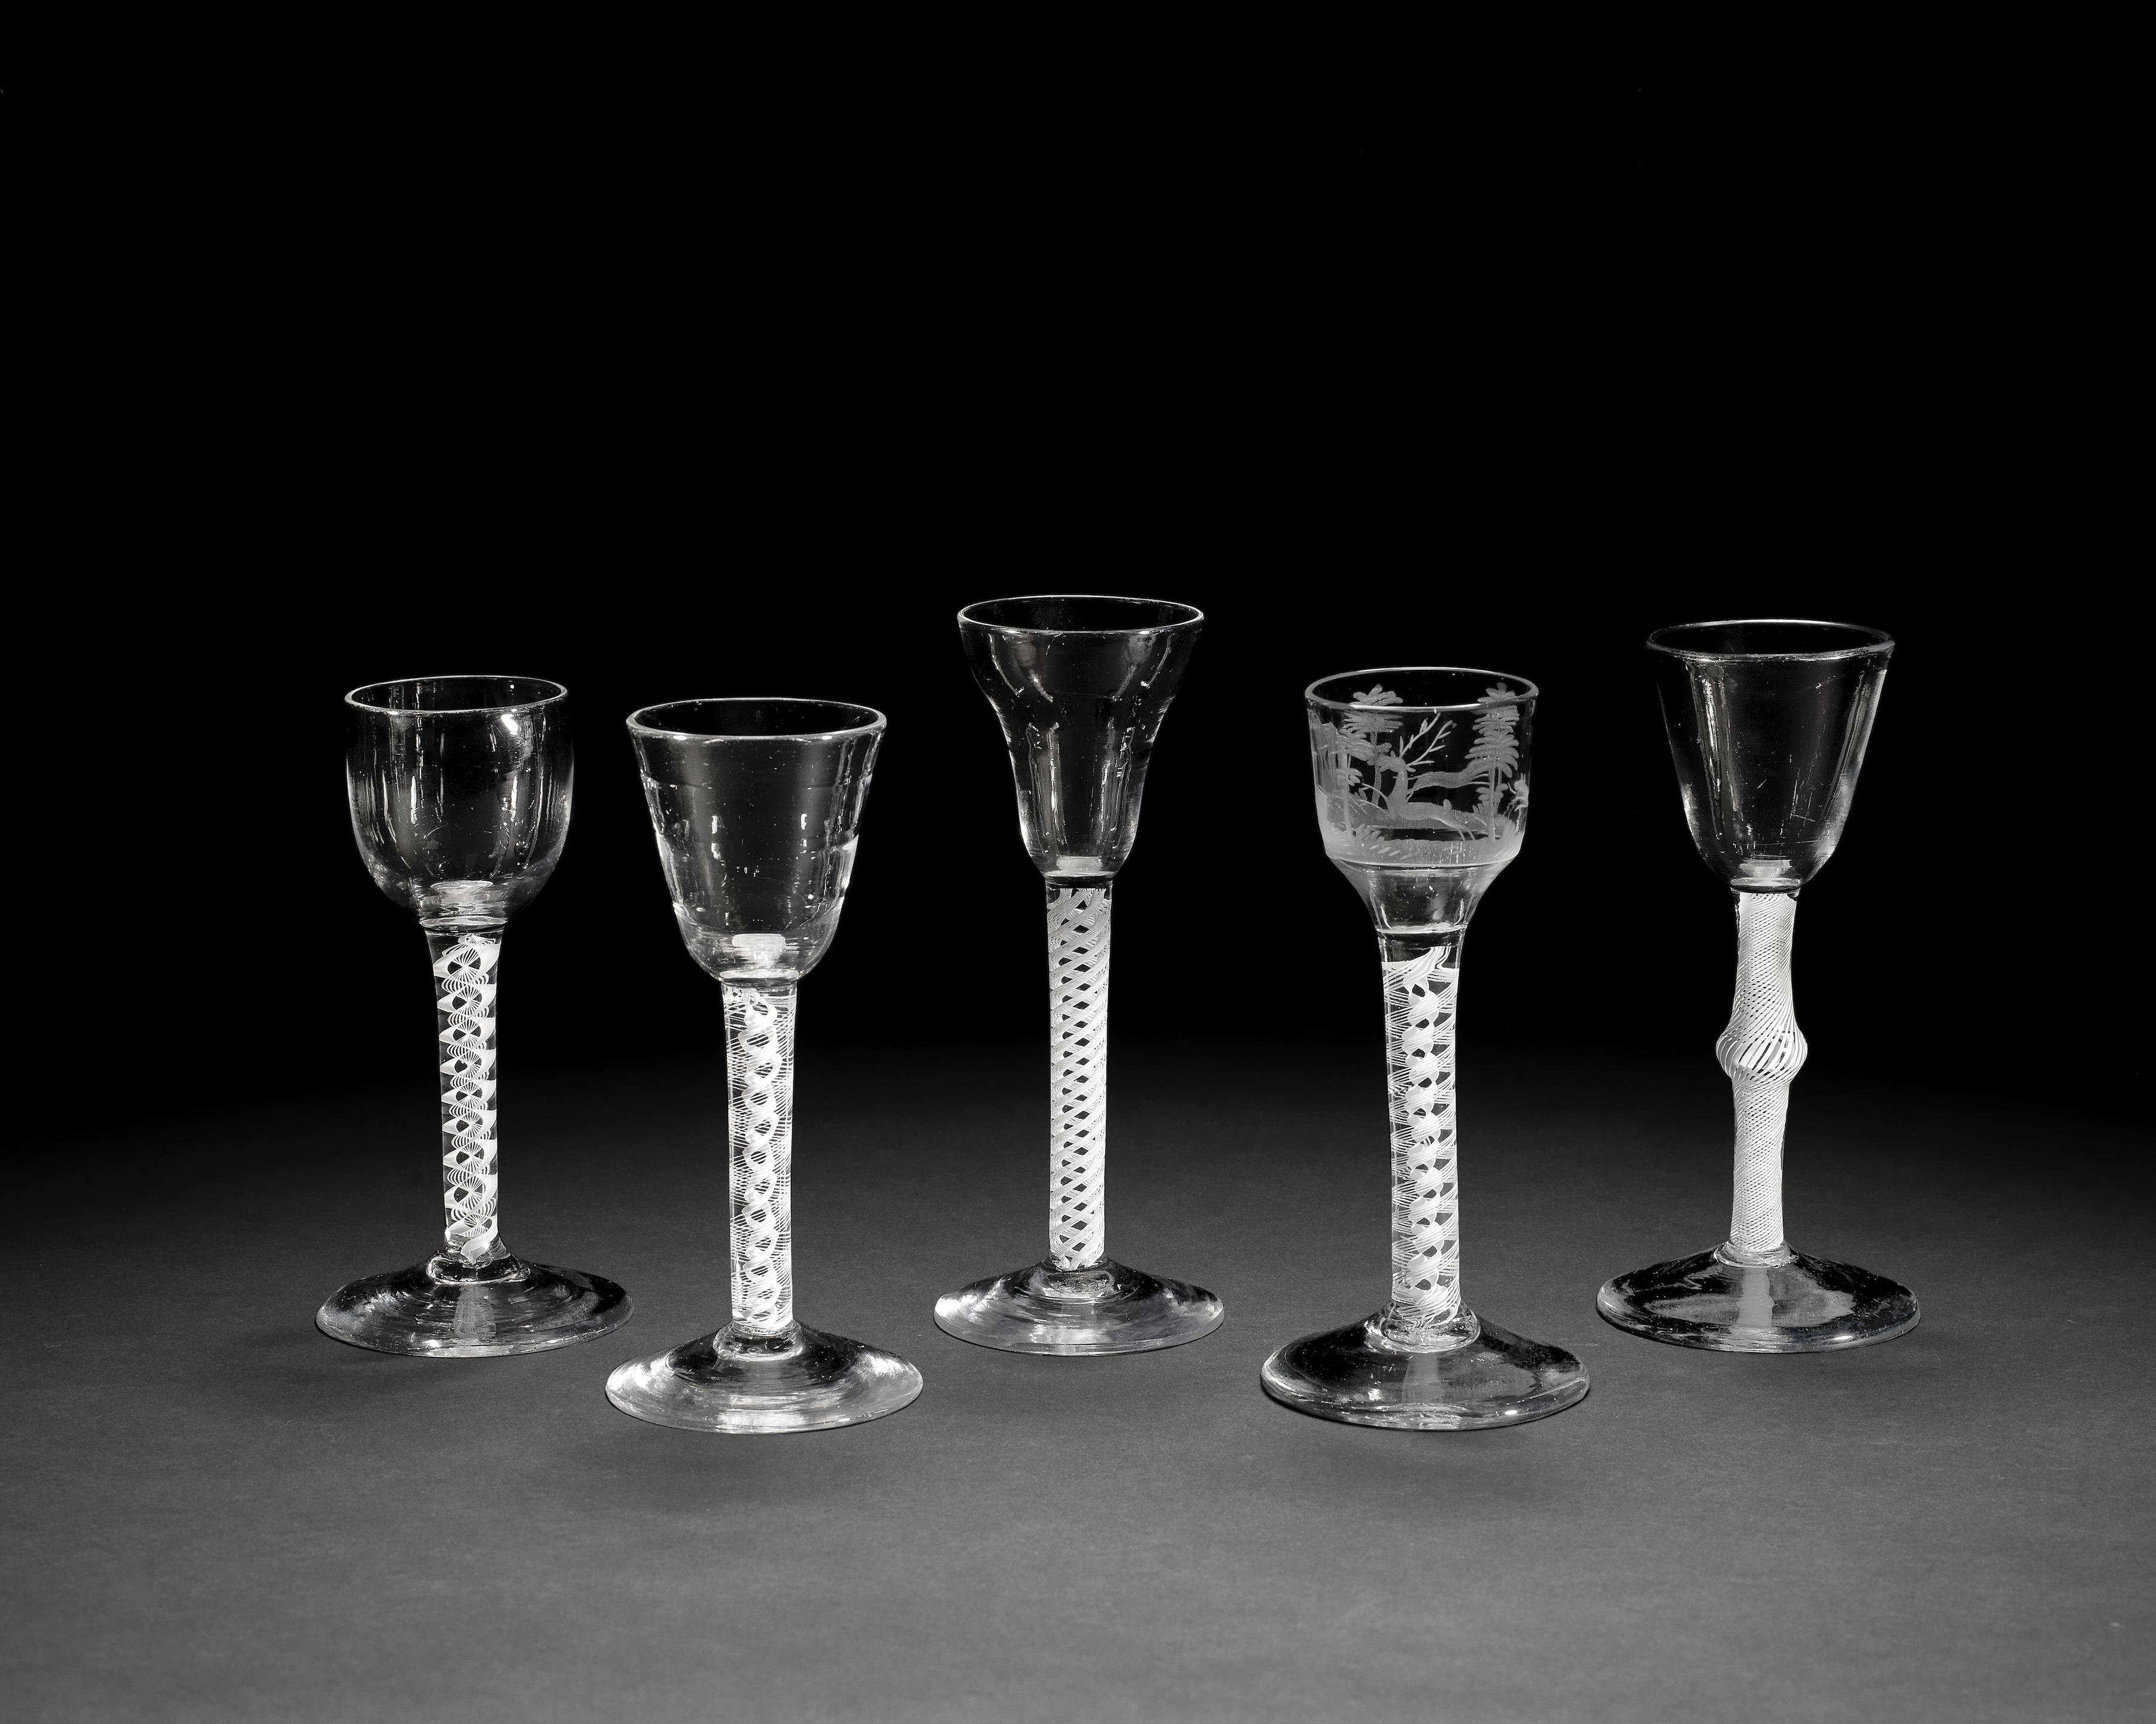 Five opaque twist wine glasses, circa 1760-65